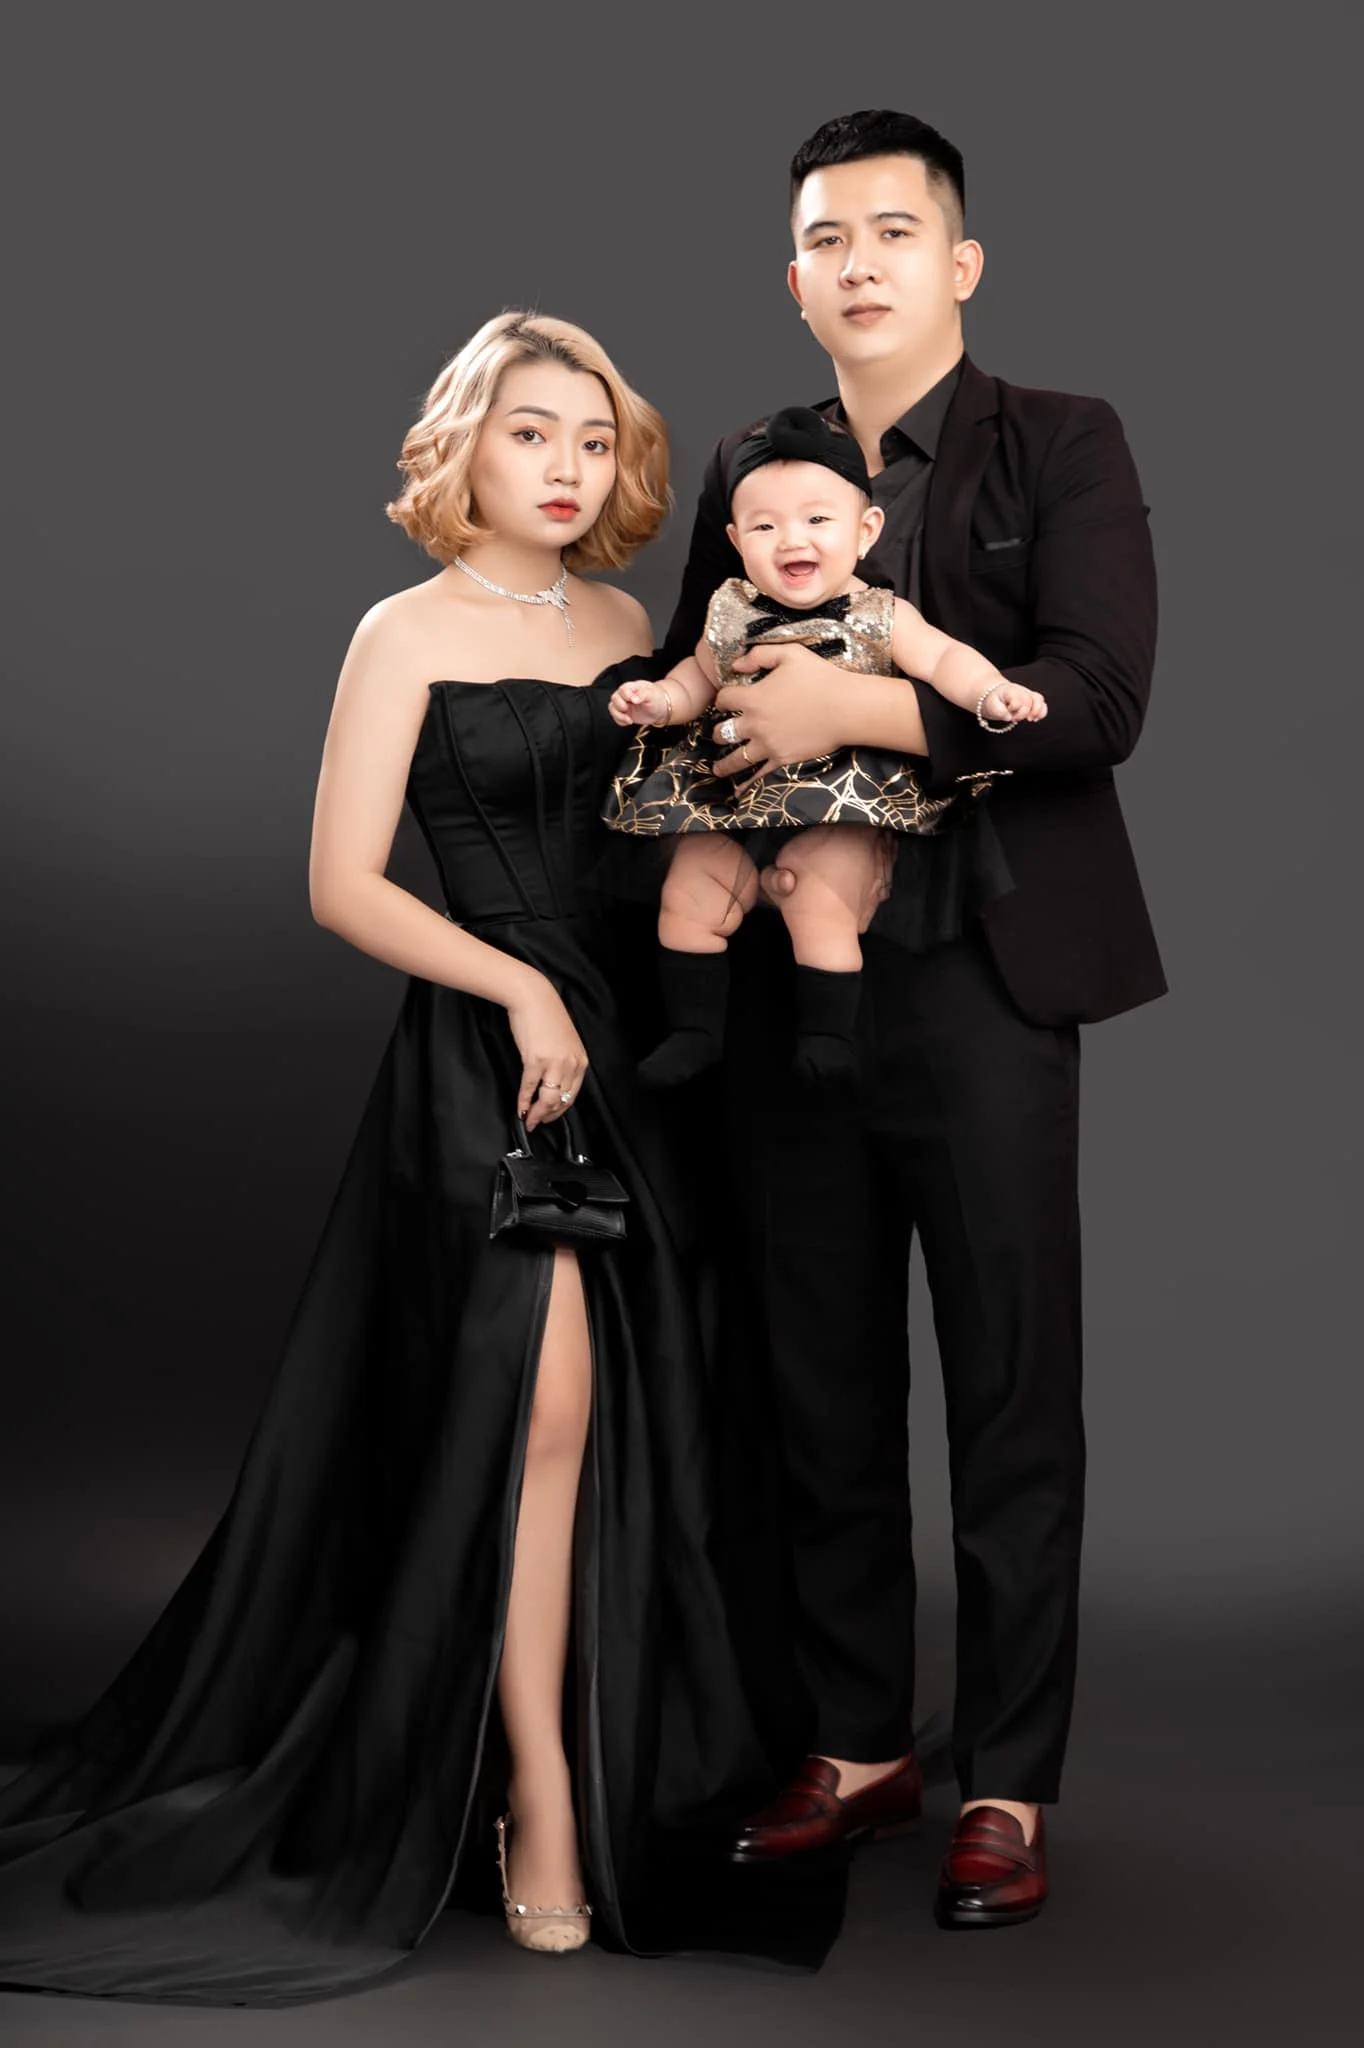 Anh gia dinh 4 1 - 19 cách tạo dáng chụp ảnh gia đình tự nhiên nhất - HThao Studio